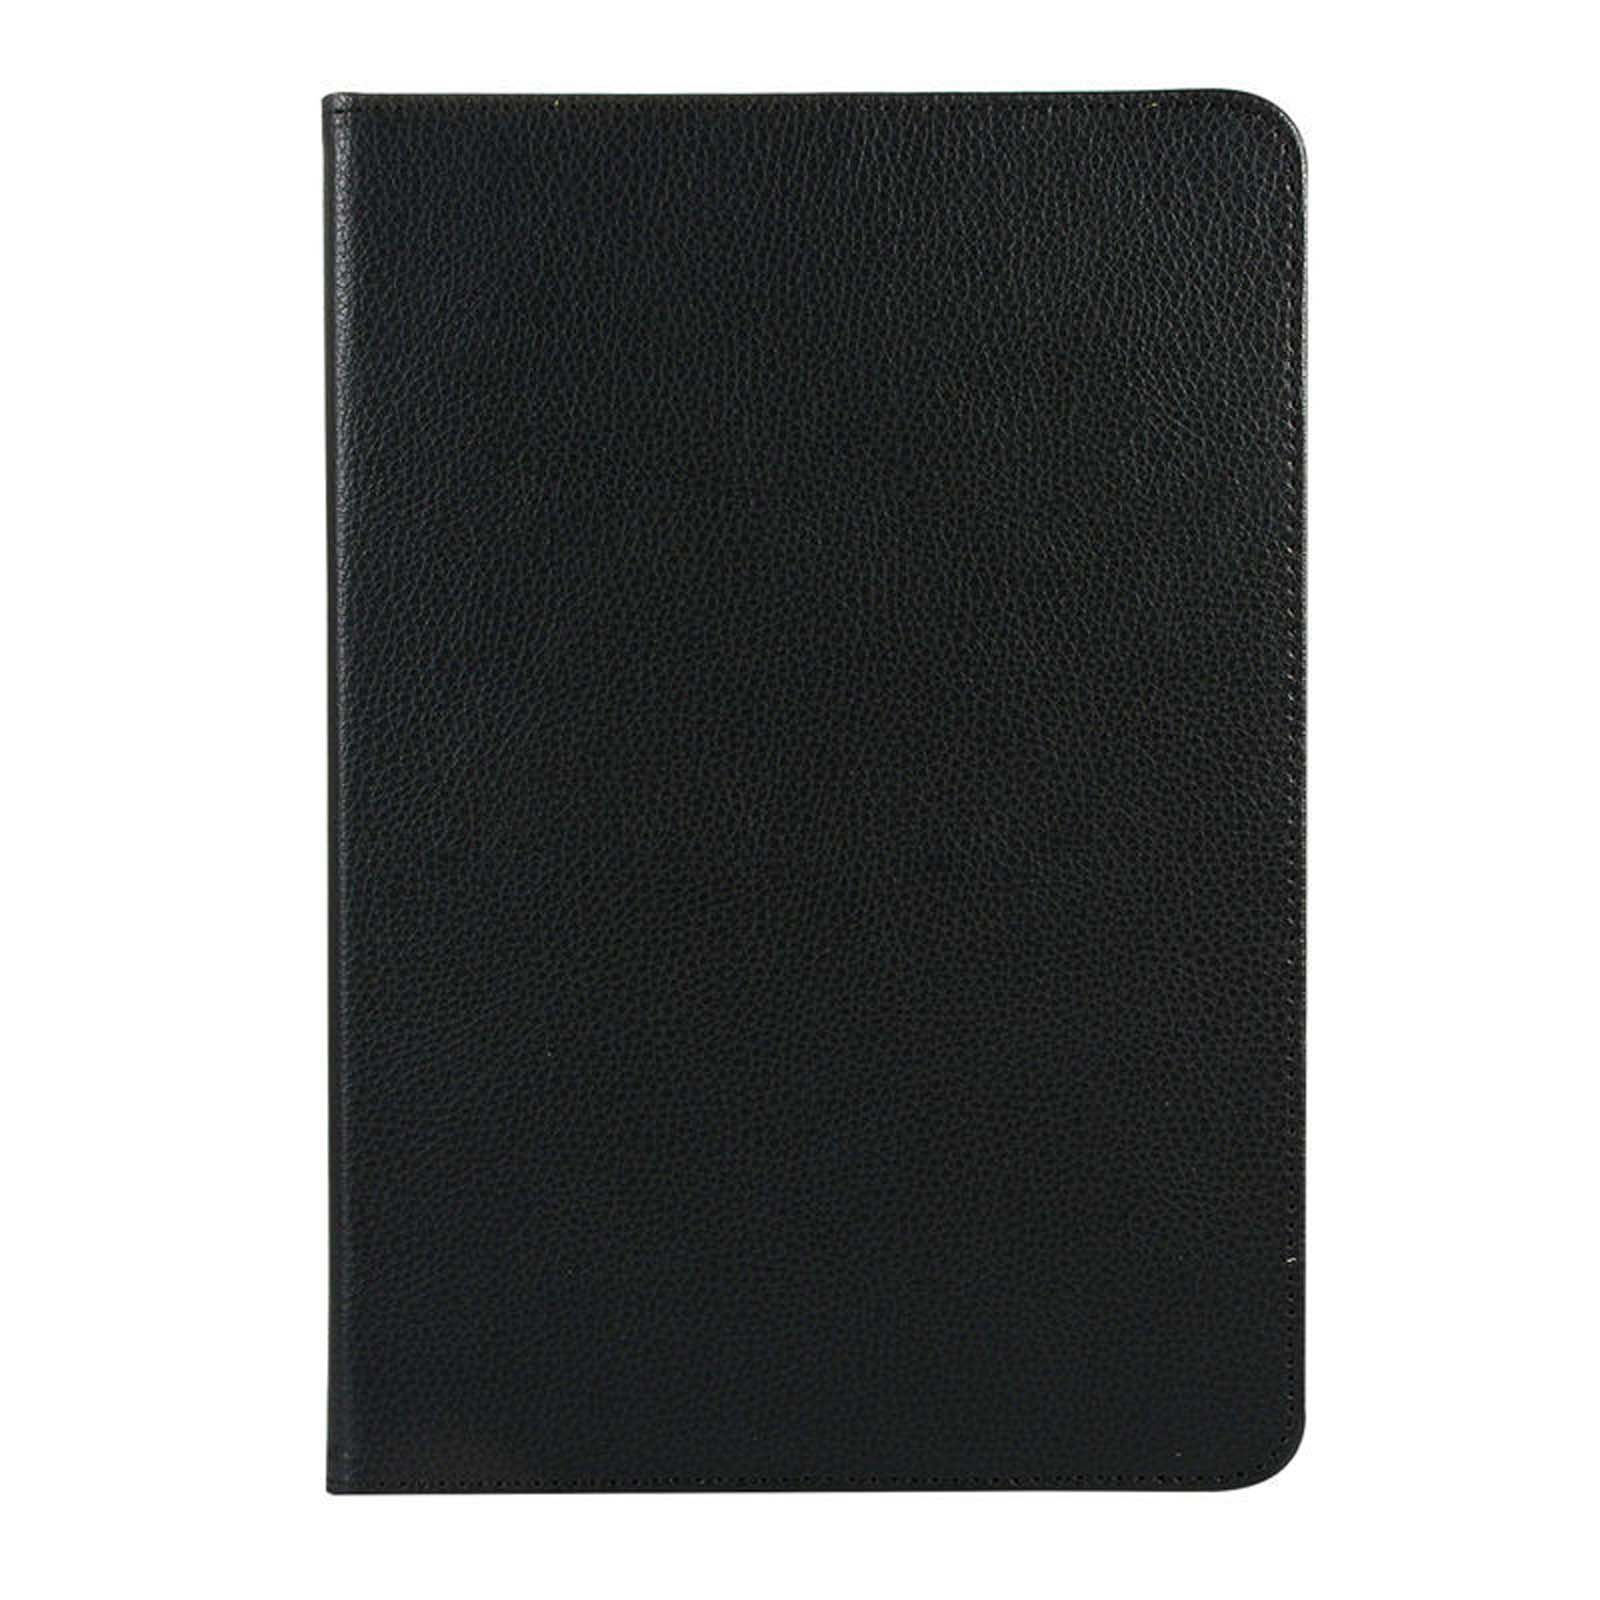 LOBWERK Hülle Schutzhülle Bookcover für Huawei 10.8 Zoll M6 MediaPad Schwarz Kunstleder